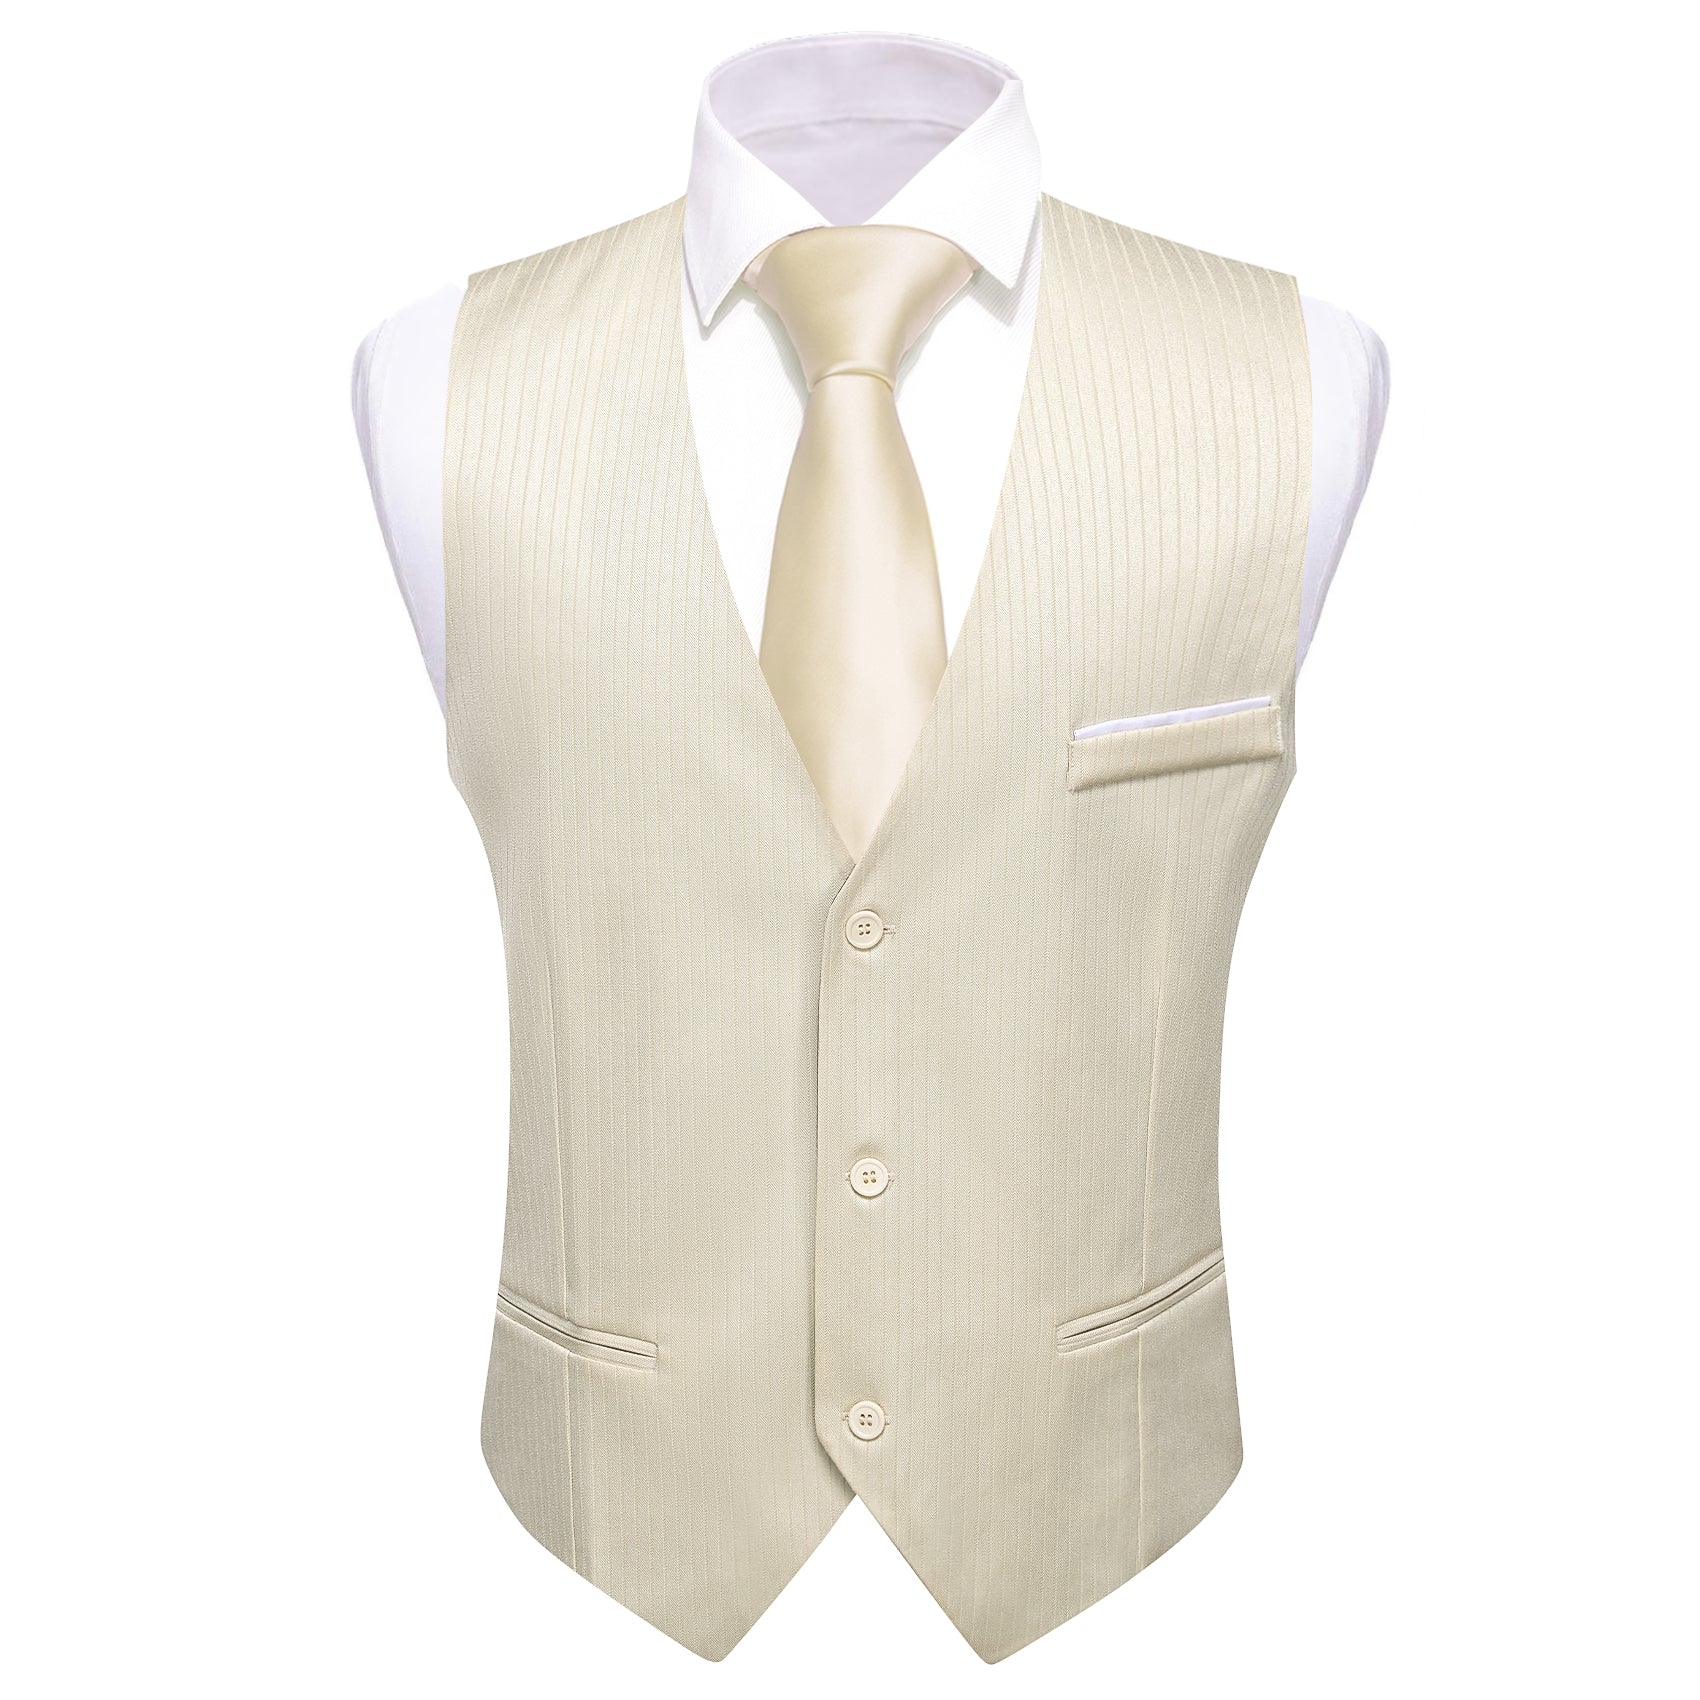 Barry.wang Linen Solid Business Vest Suit